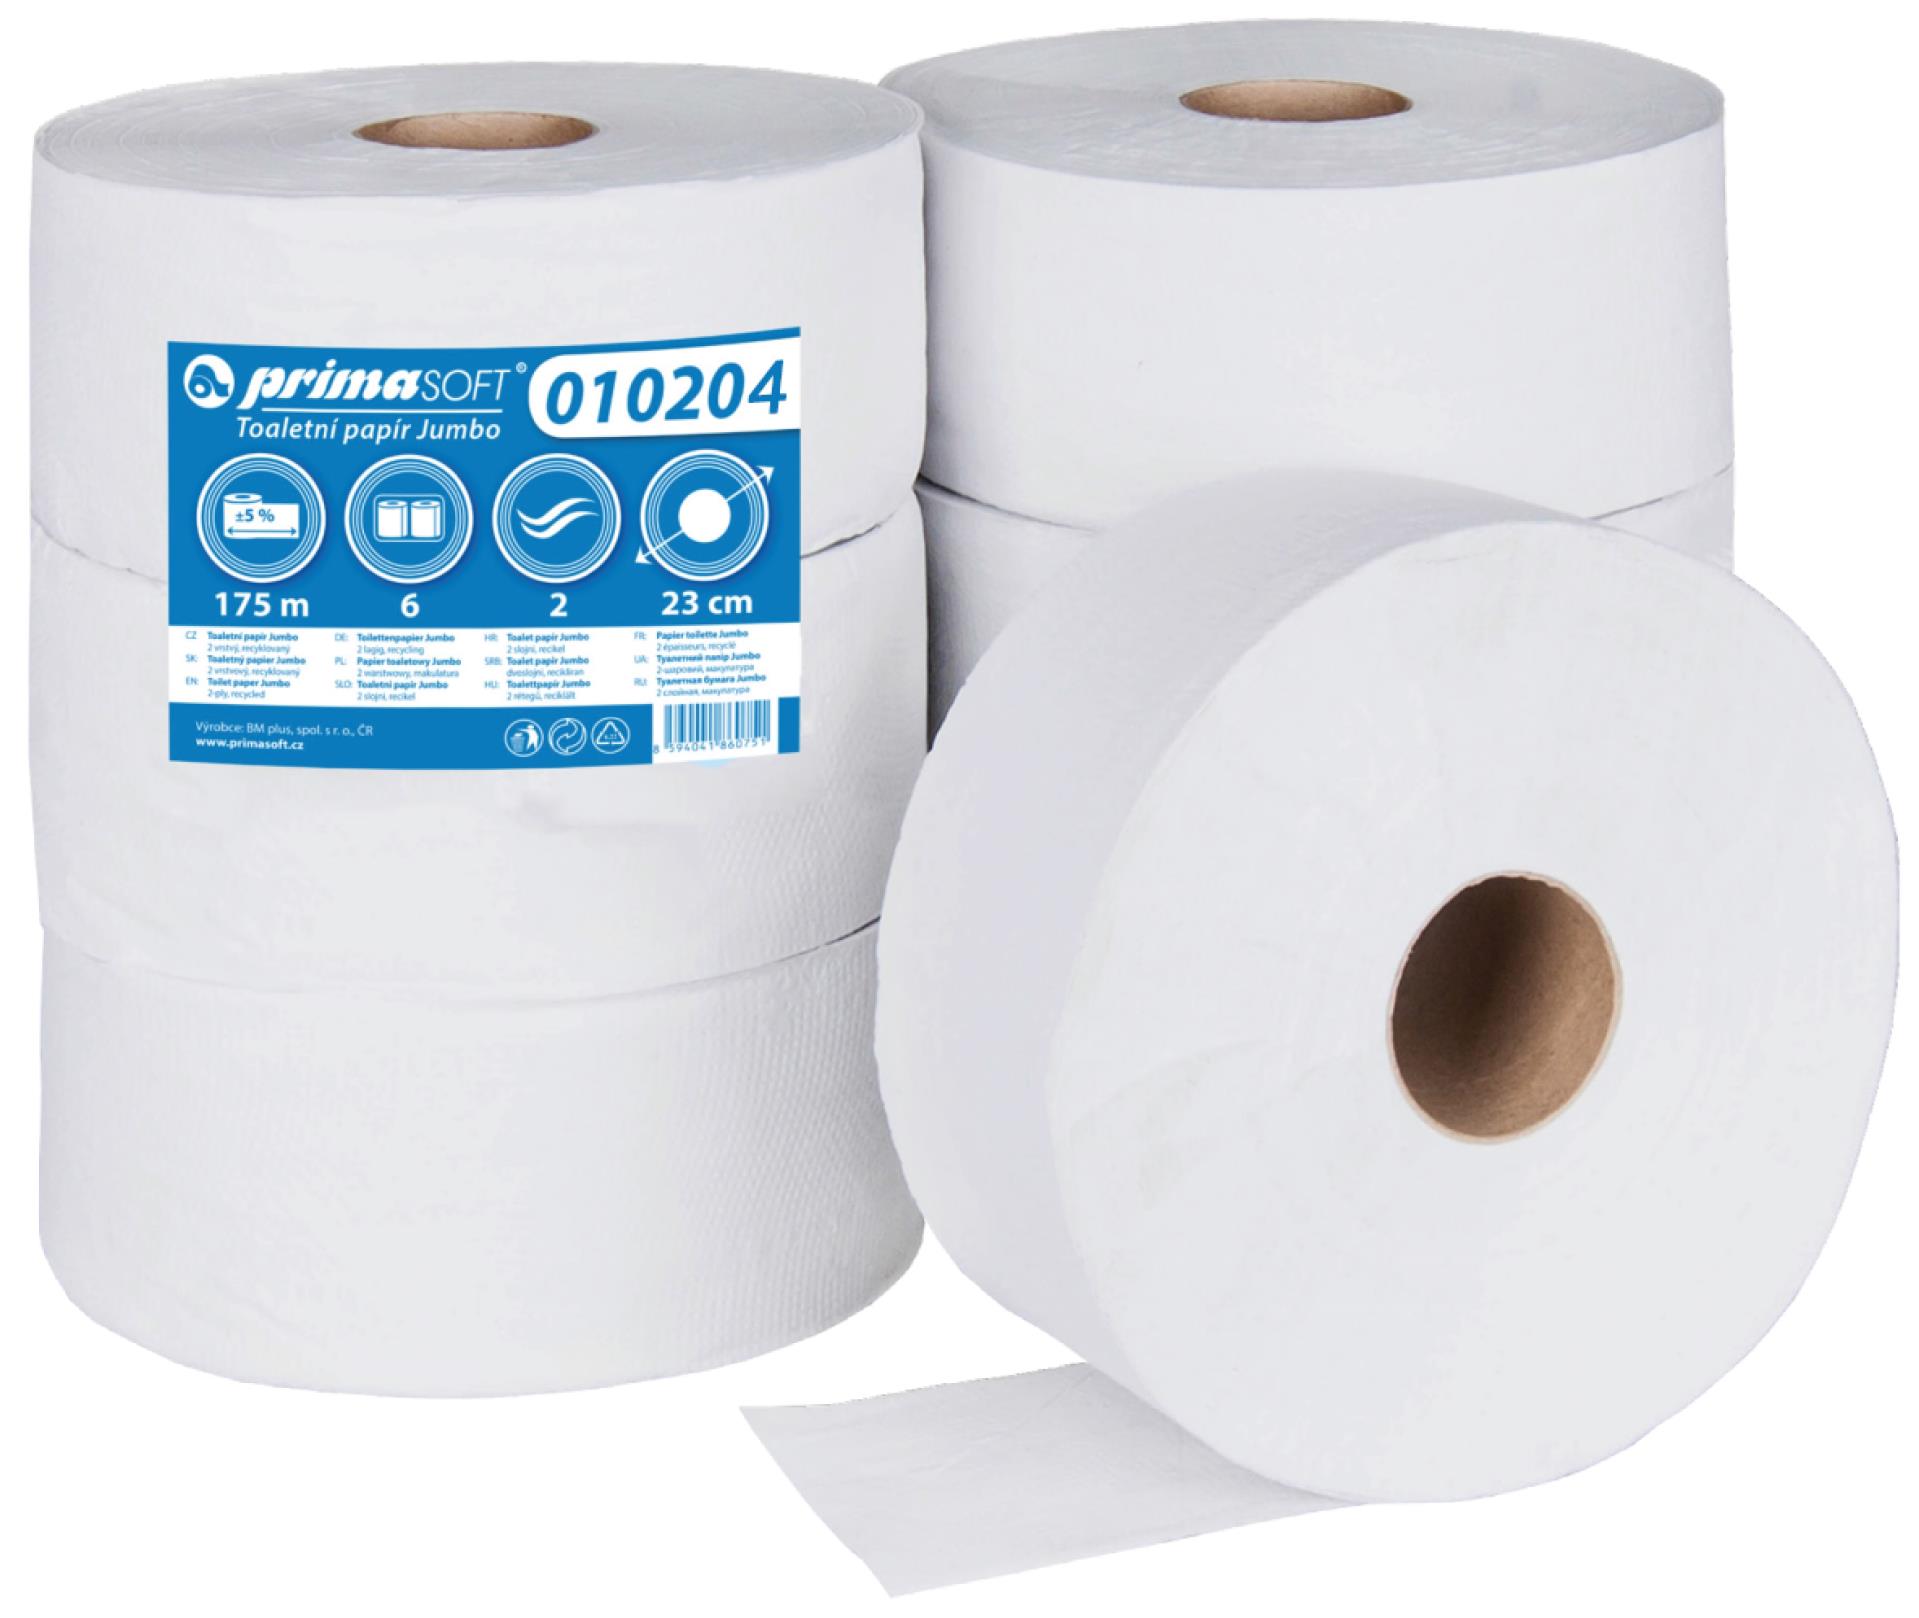 Primasoft Toaletní papír Jumbo 26 cm - 2 vrstvý, 6 rolí